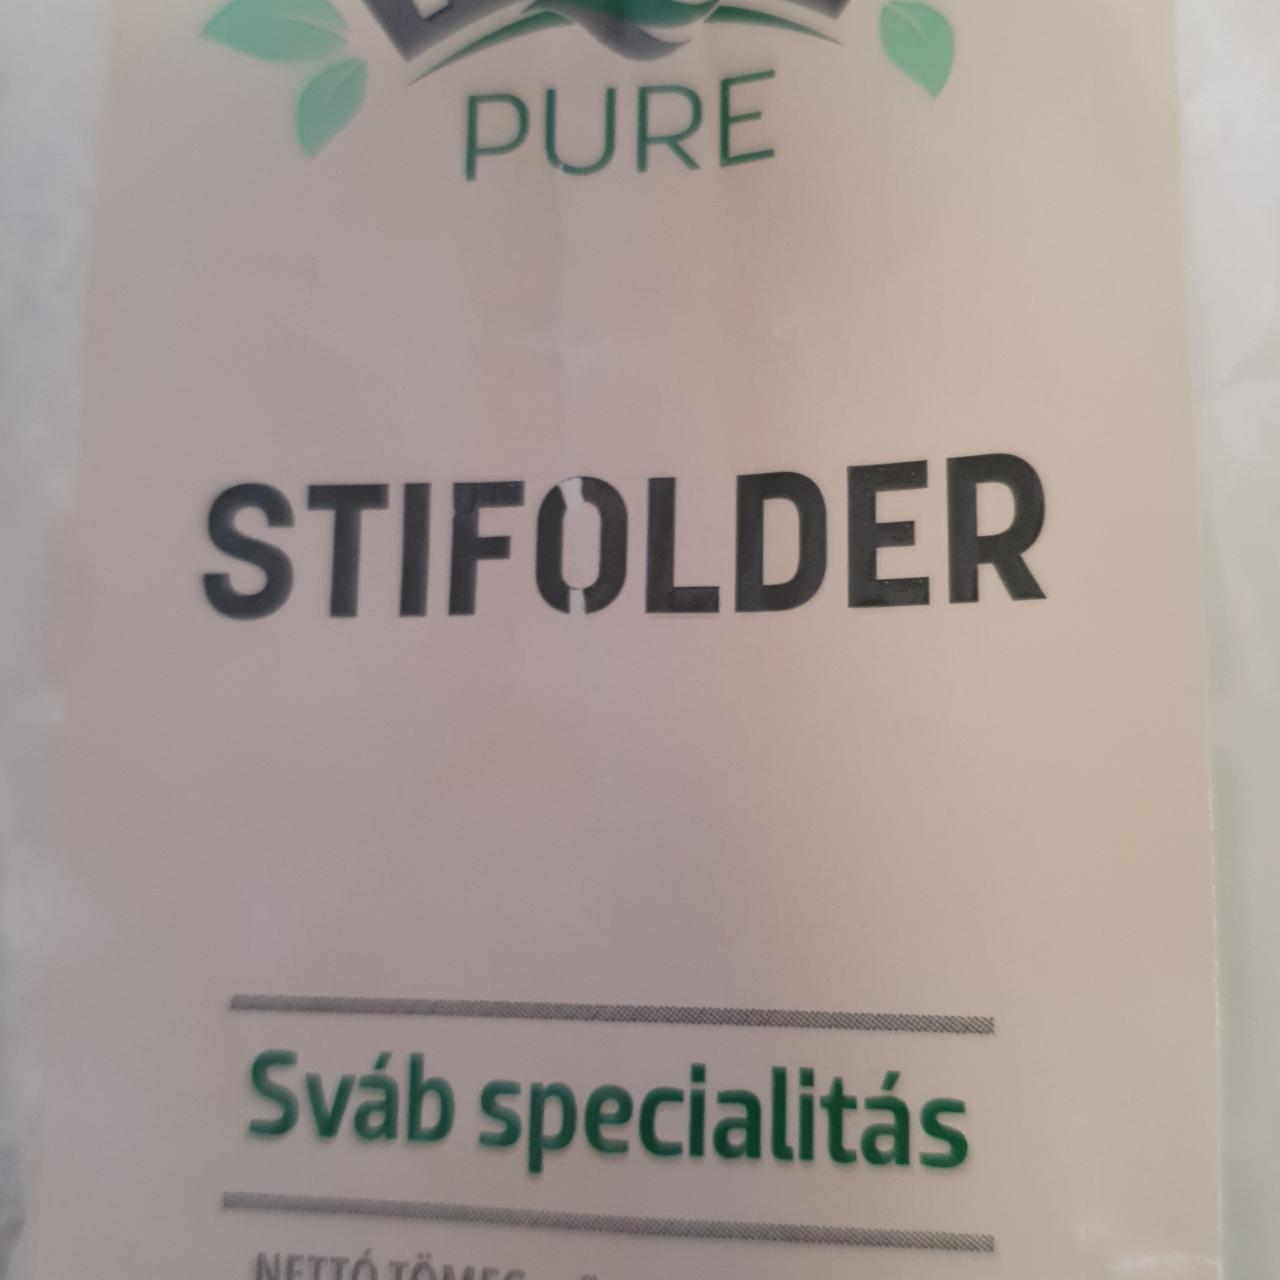 Képek - Stifolder sváb specialitás Pikok Pure